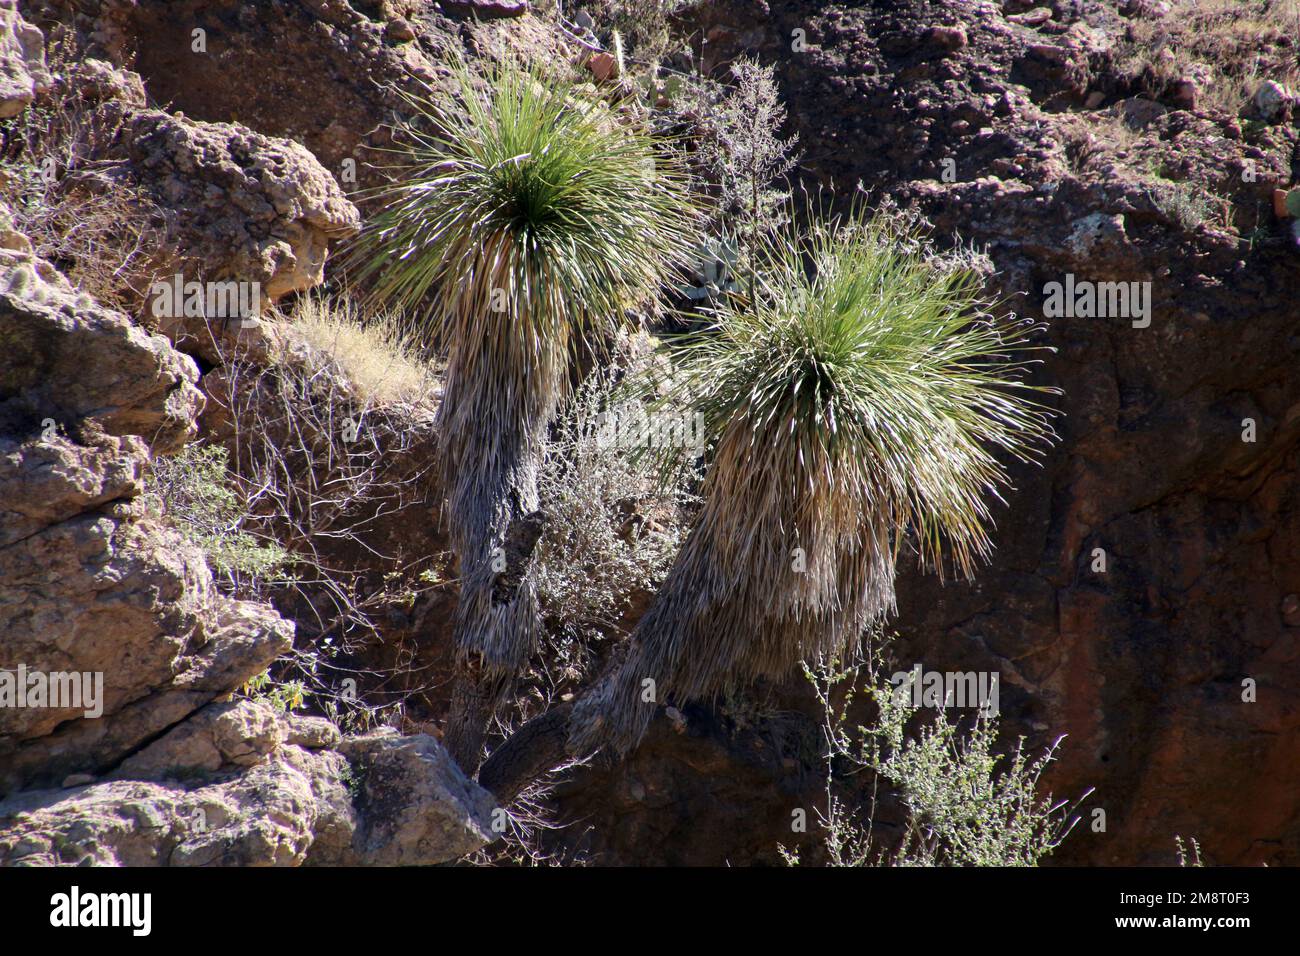 Mexican grass tree, Baja California Sur, Mexico Stock Photo